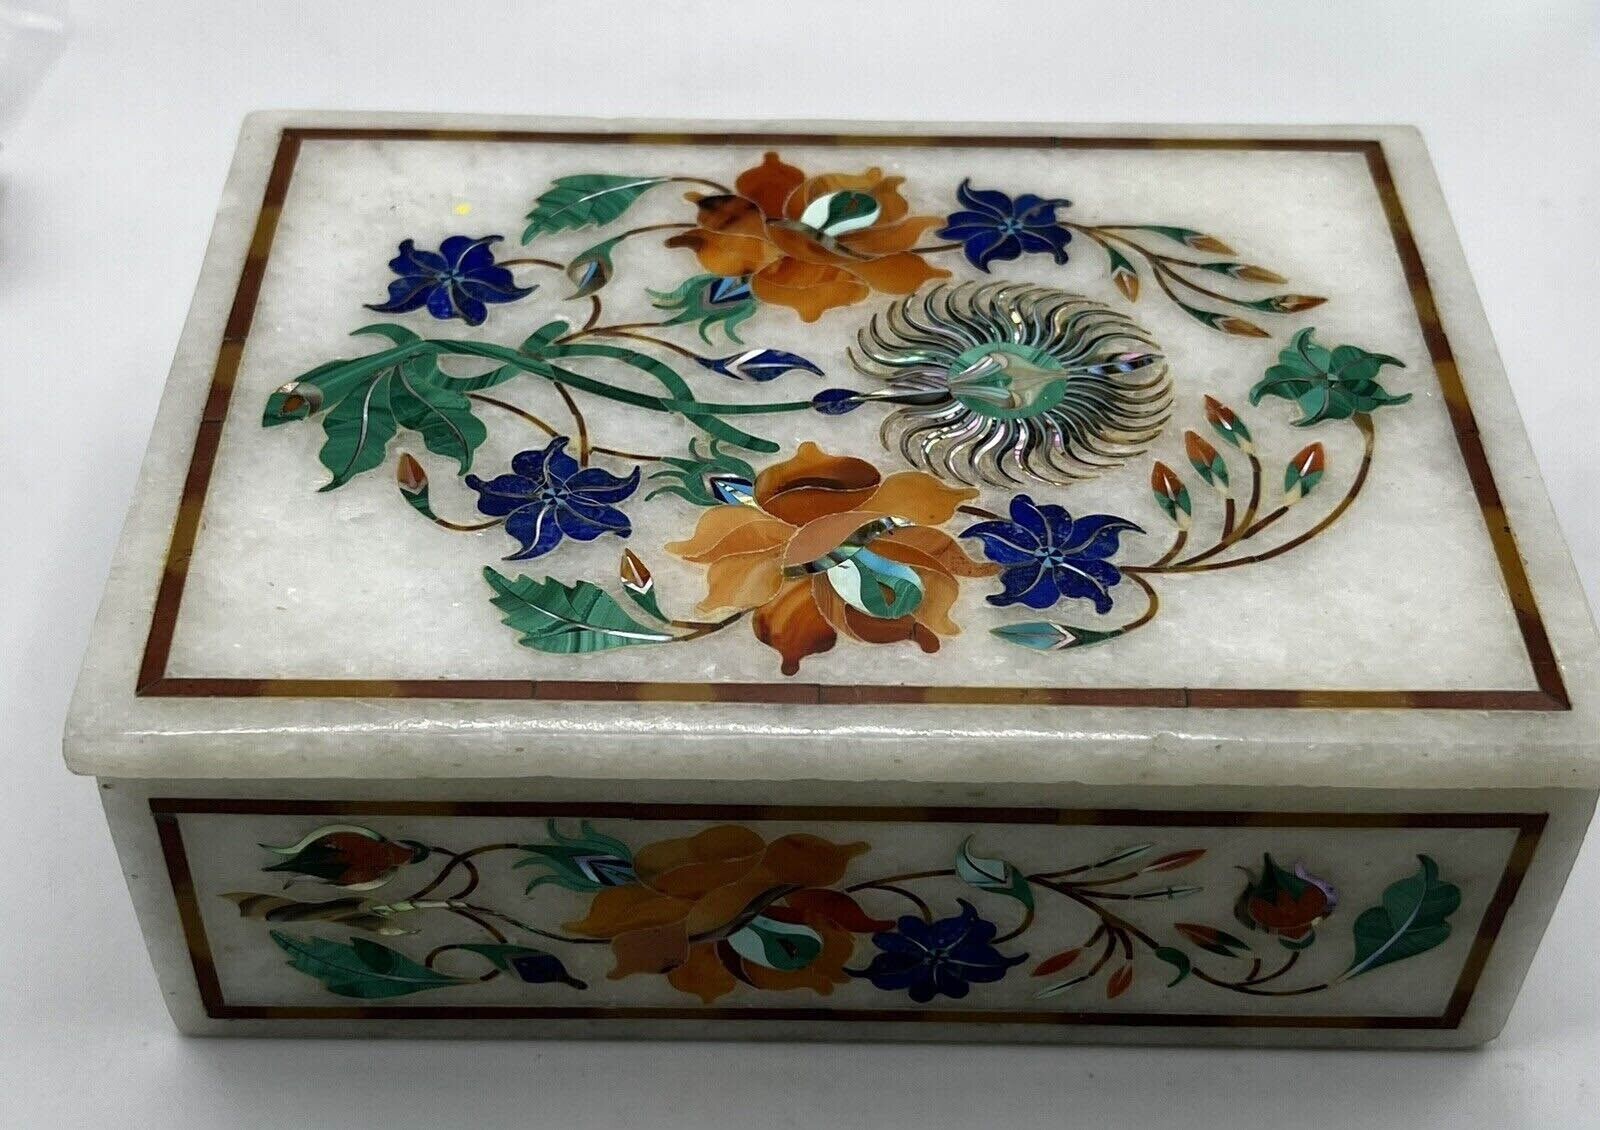 White Marble Jewelry Box with Gemstone Pietra Dura Inlaid Art Handmade Gift Deco